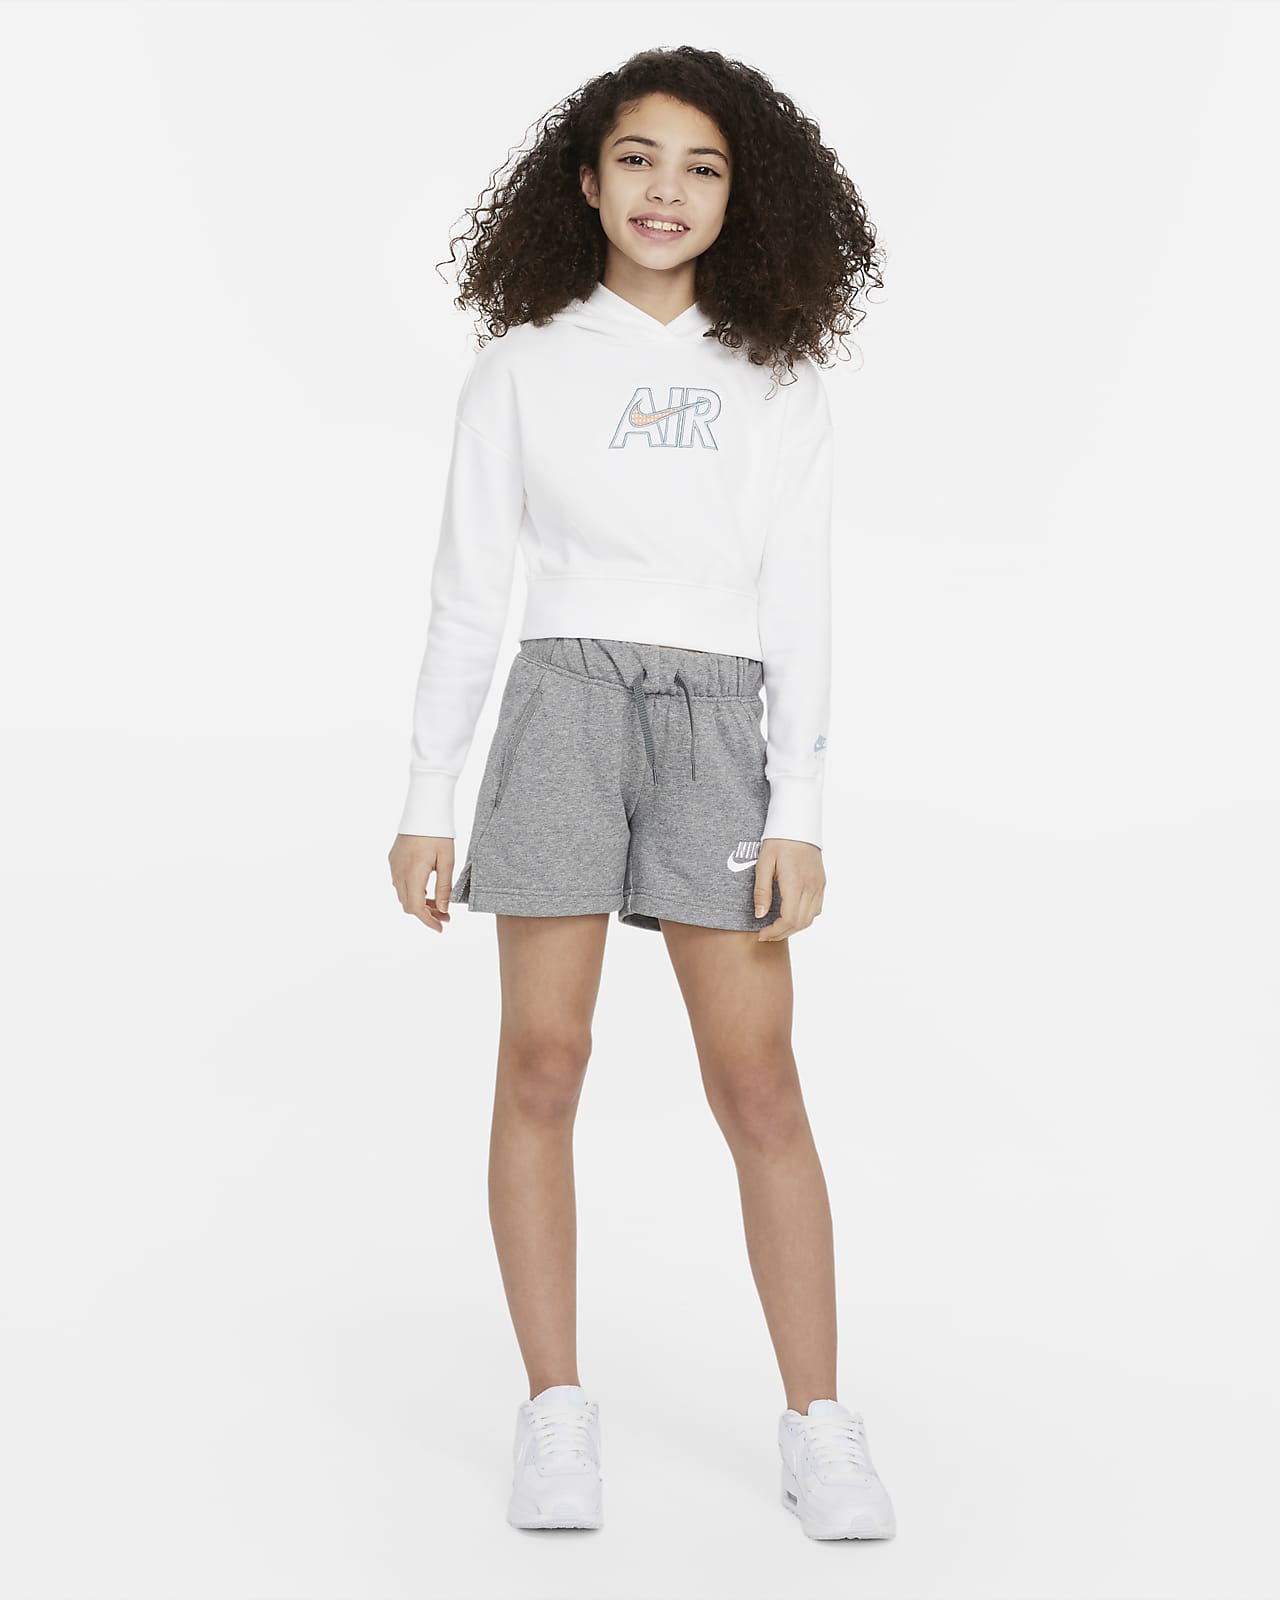 gemeenschap Bedelen Eerlijk Nike Air Korte hoodie van sweatstof voor meisjes. Nike BE